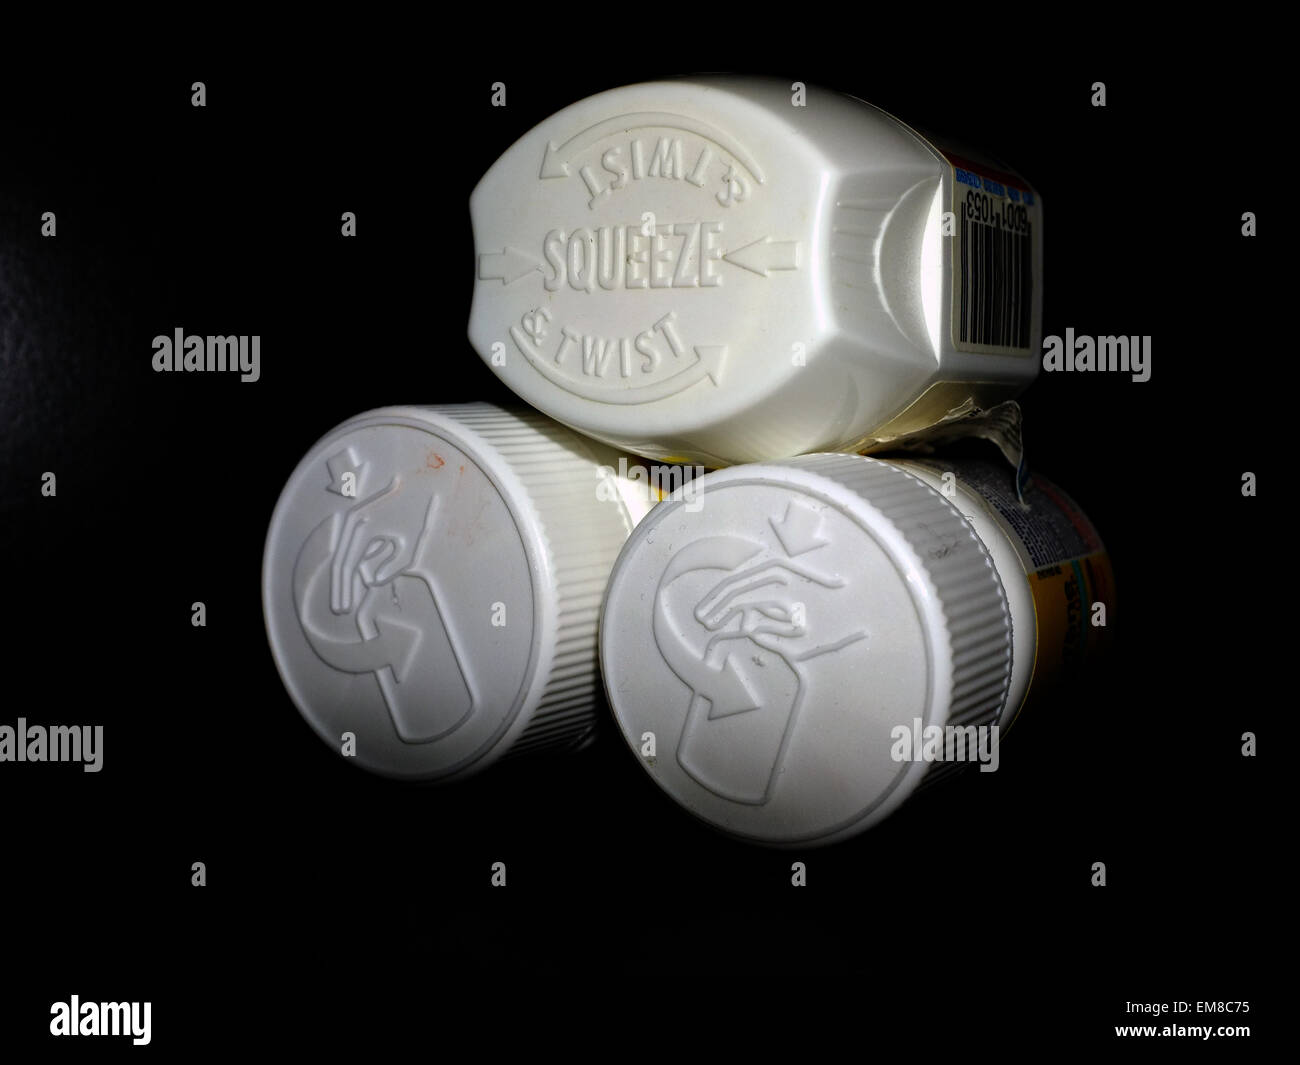 Les emballages protège-enfants sur les bouteilles de comprimés de vitamine a photographié sur un fond noir. Banque D'Images